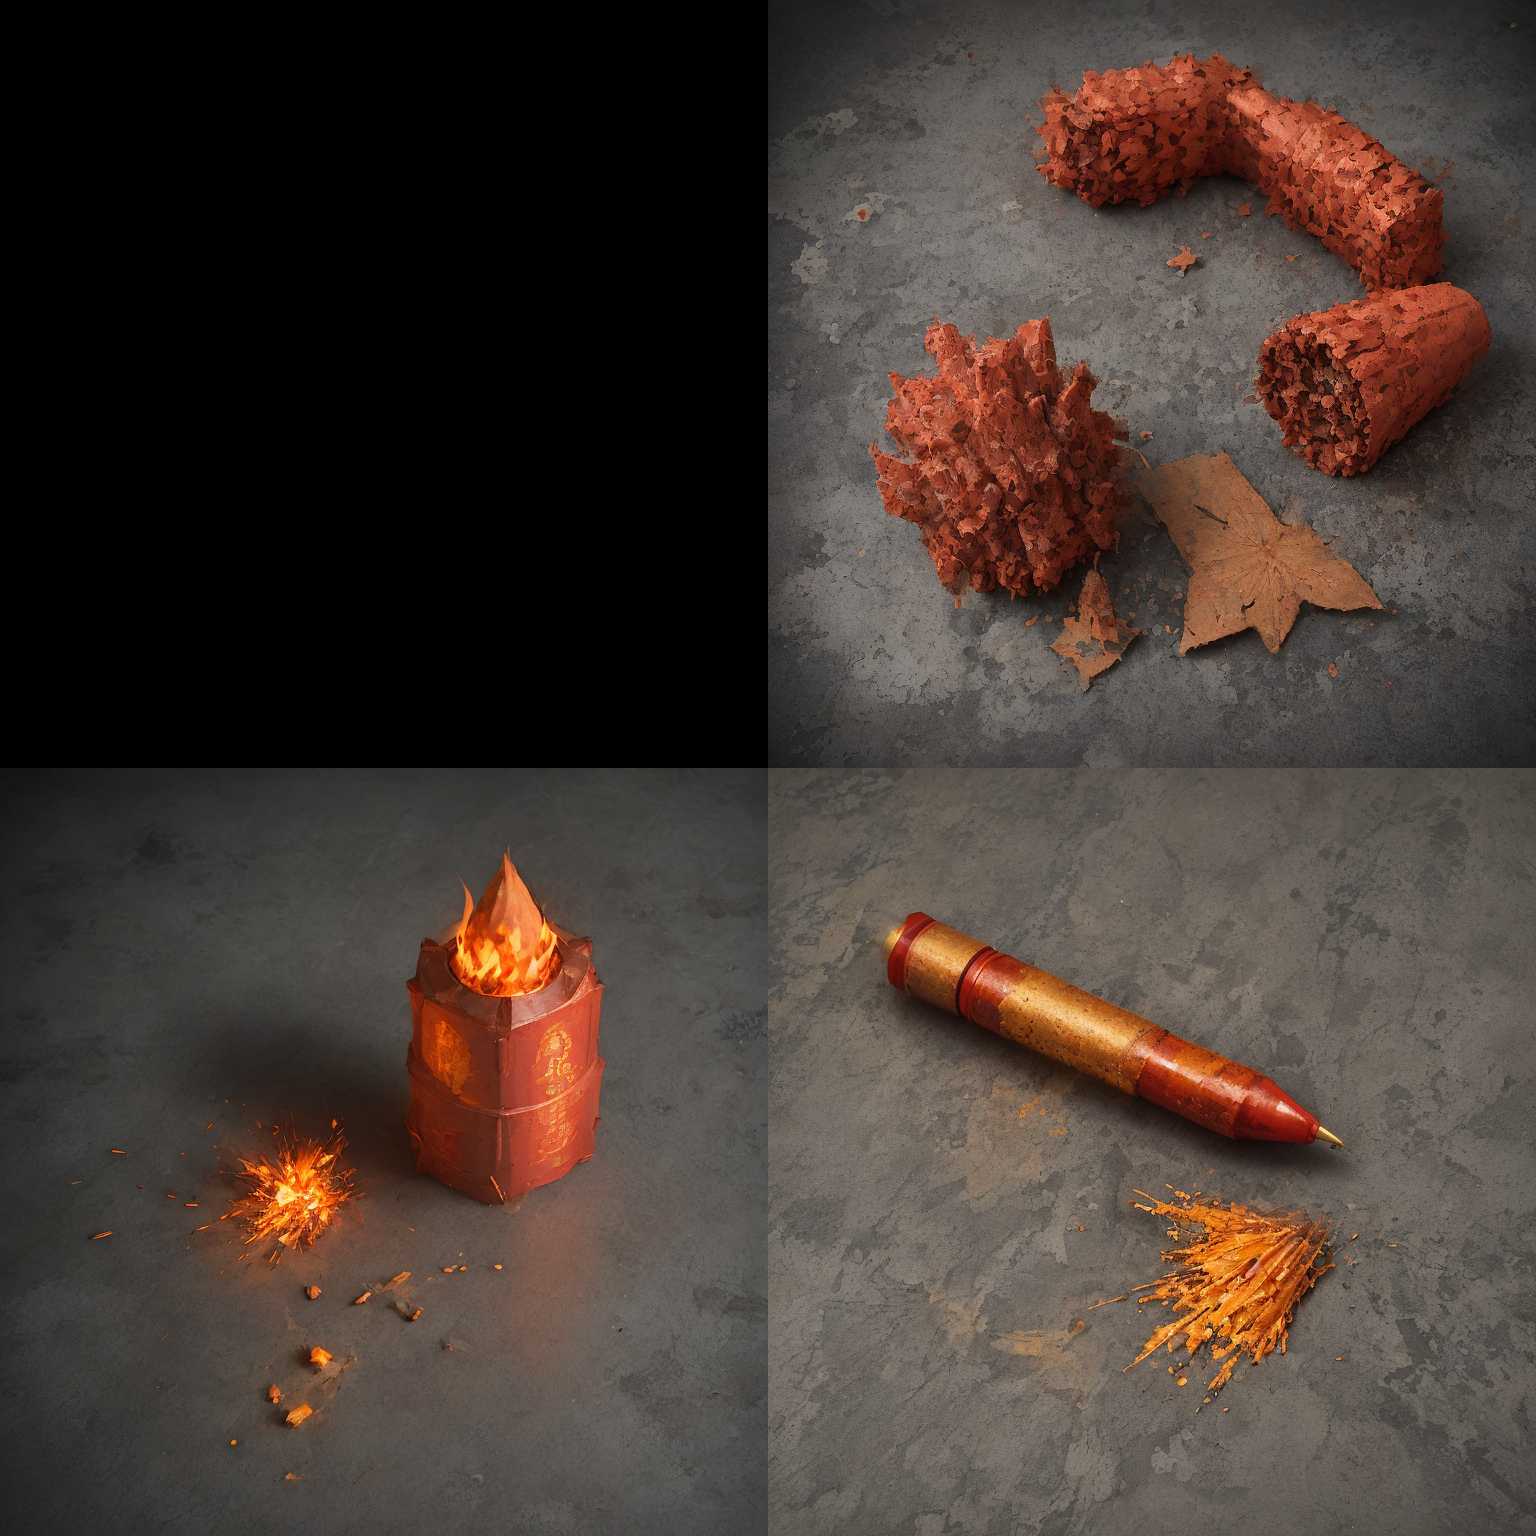 An unused firecracker